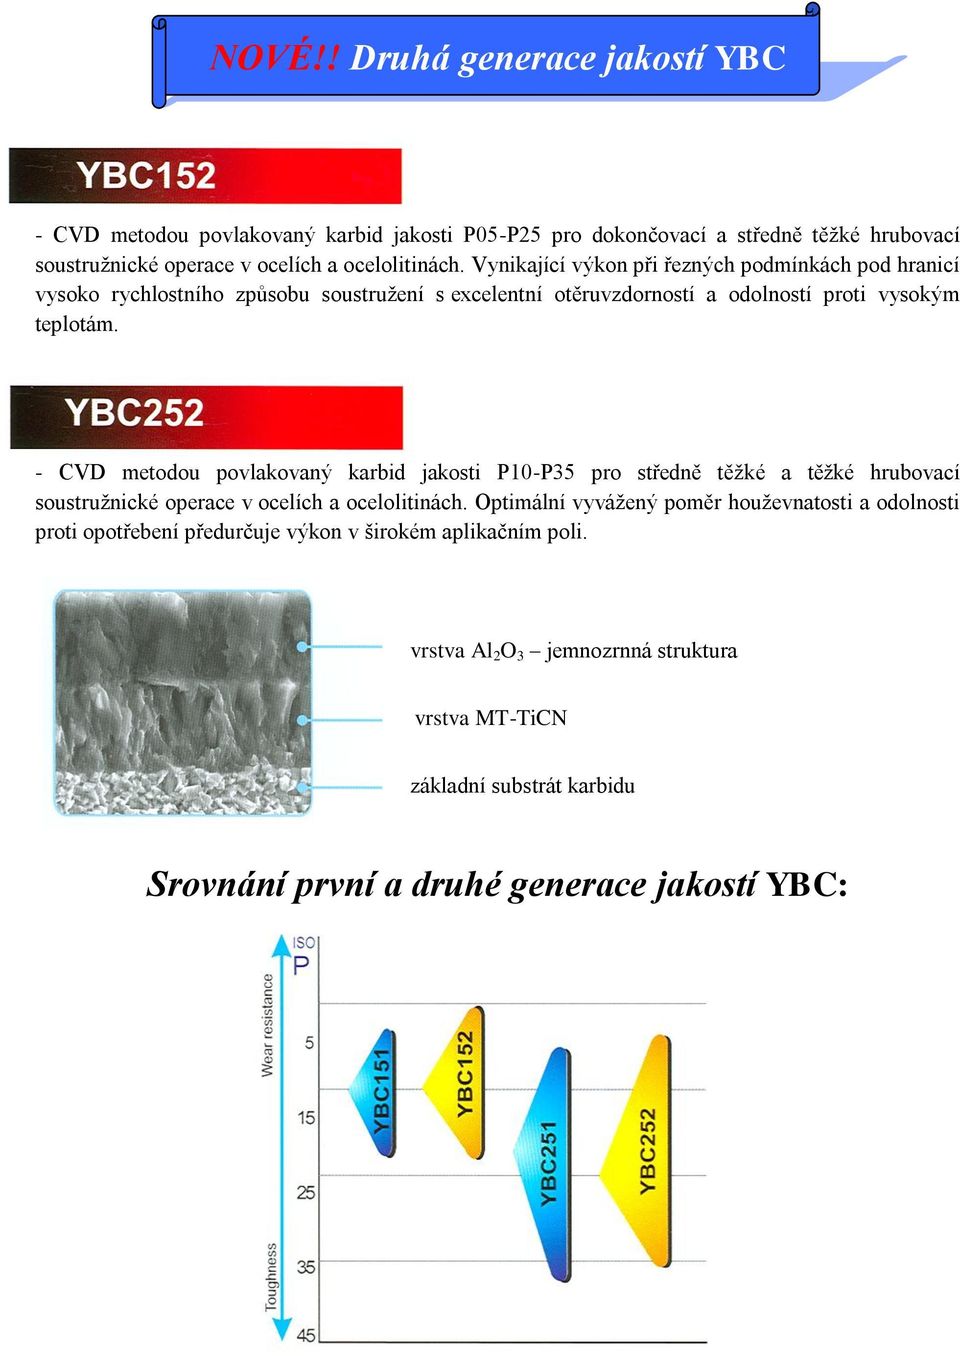 - CVD metodou povlakovaný karbid jakosti P10-P35 pro středně těžké a těžké hrubovací soustružnické operace v ocelích a ocelolitinách.